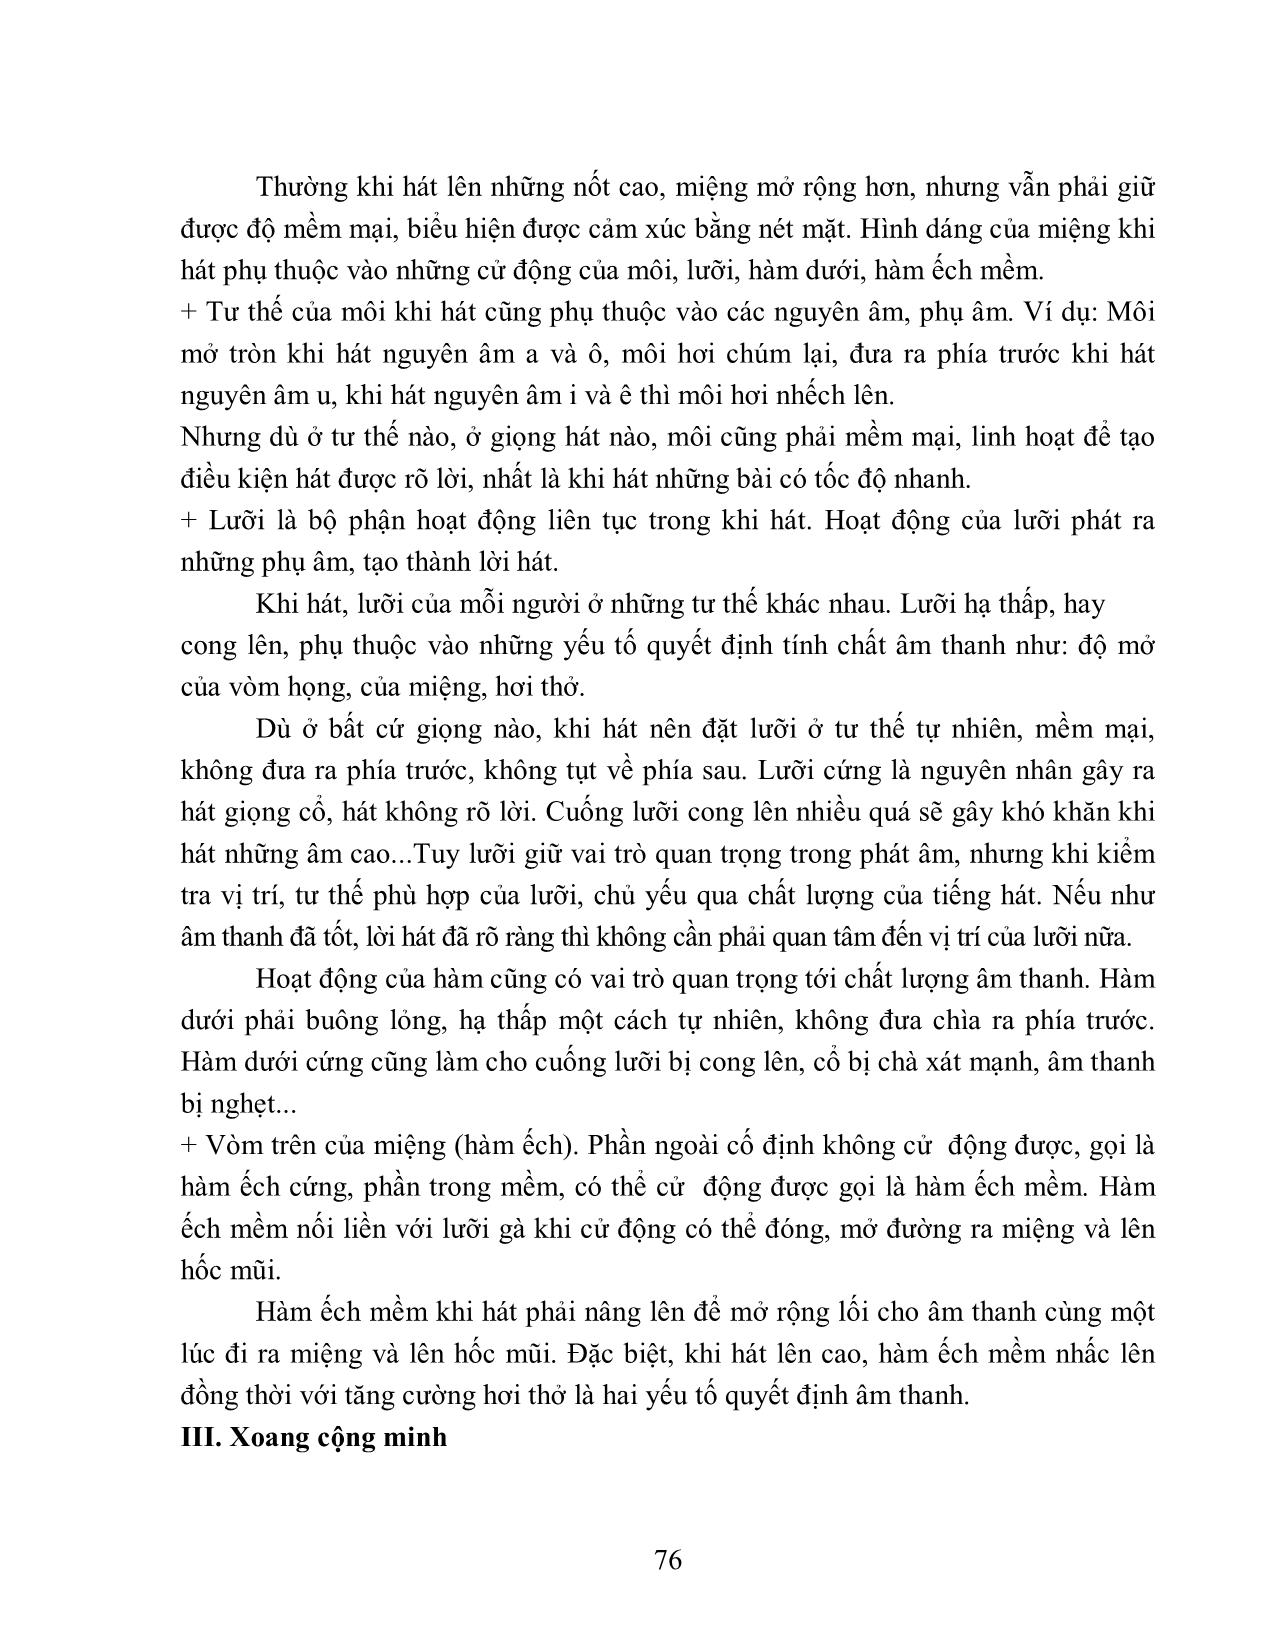 Giáo trình Âm nhạc (Phần 2) trang 3